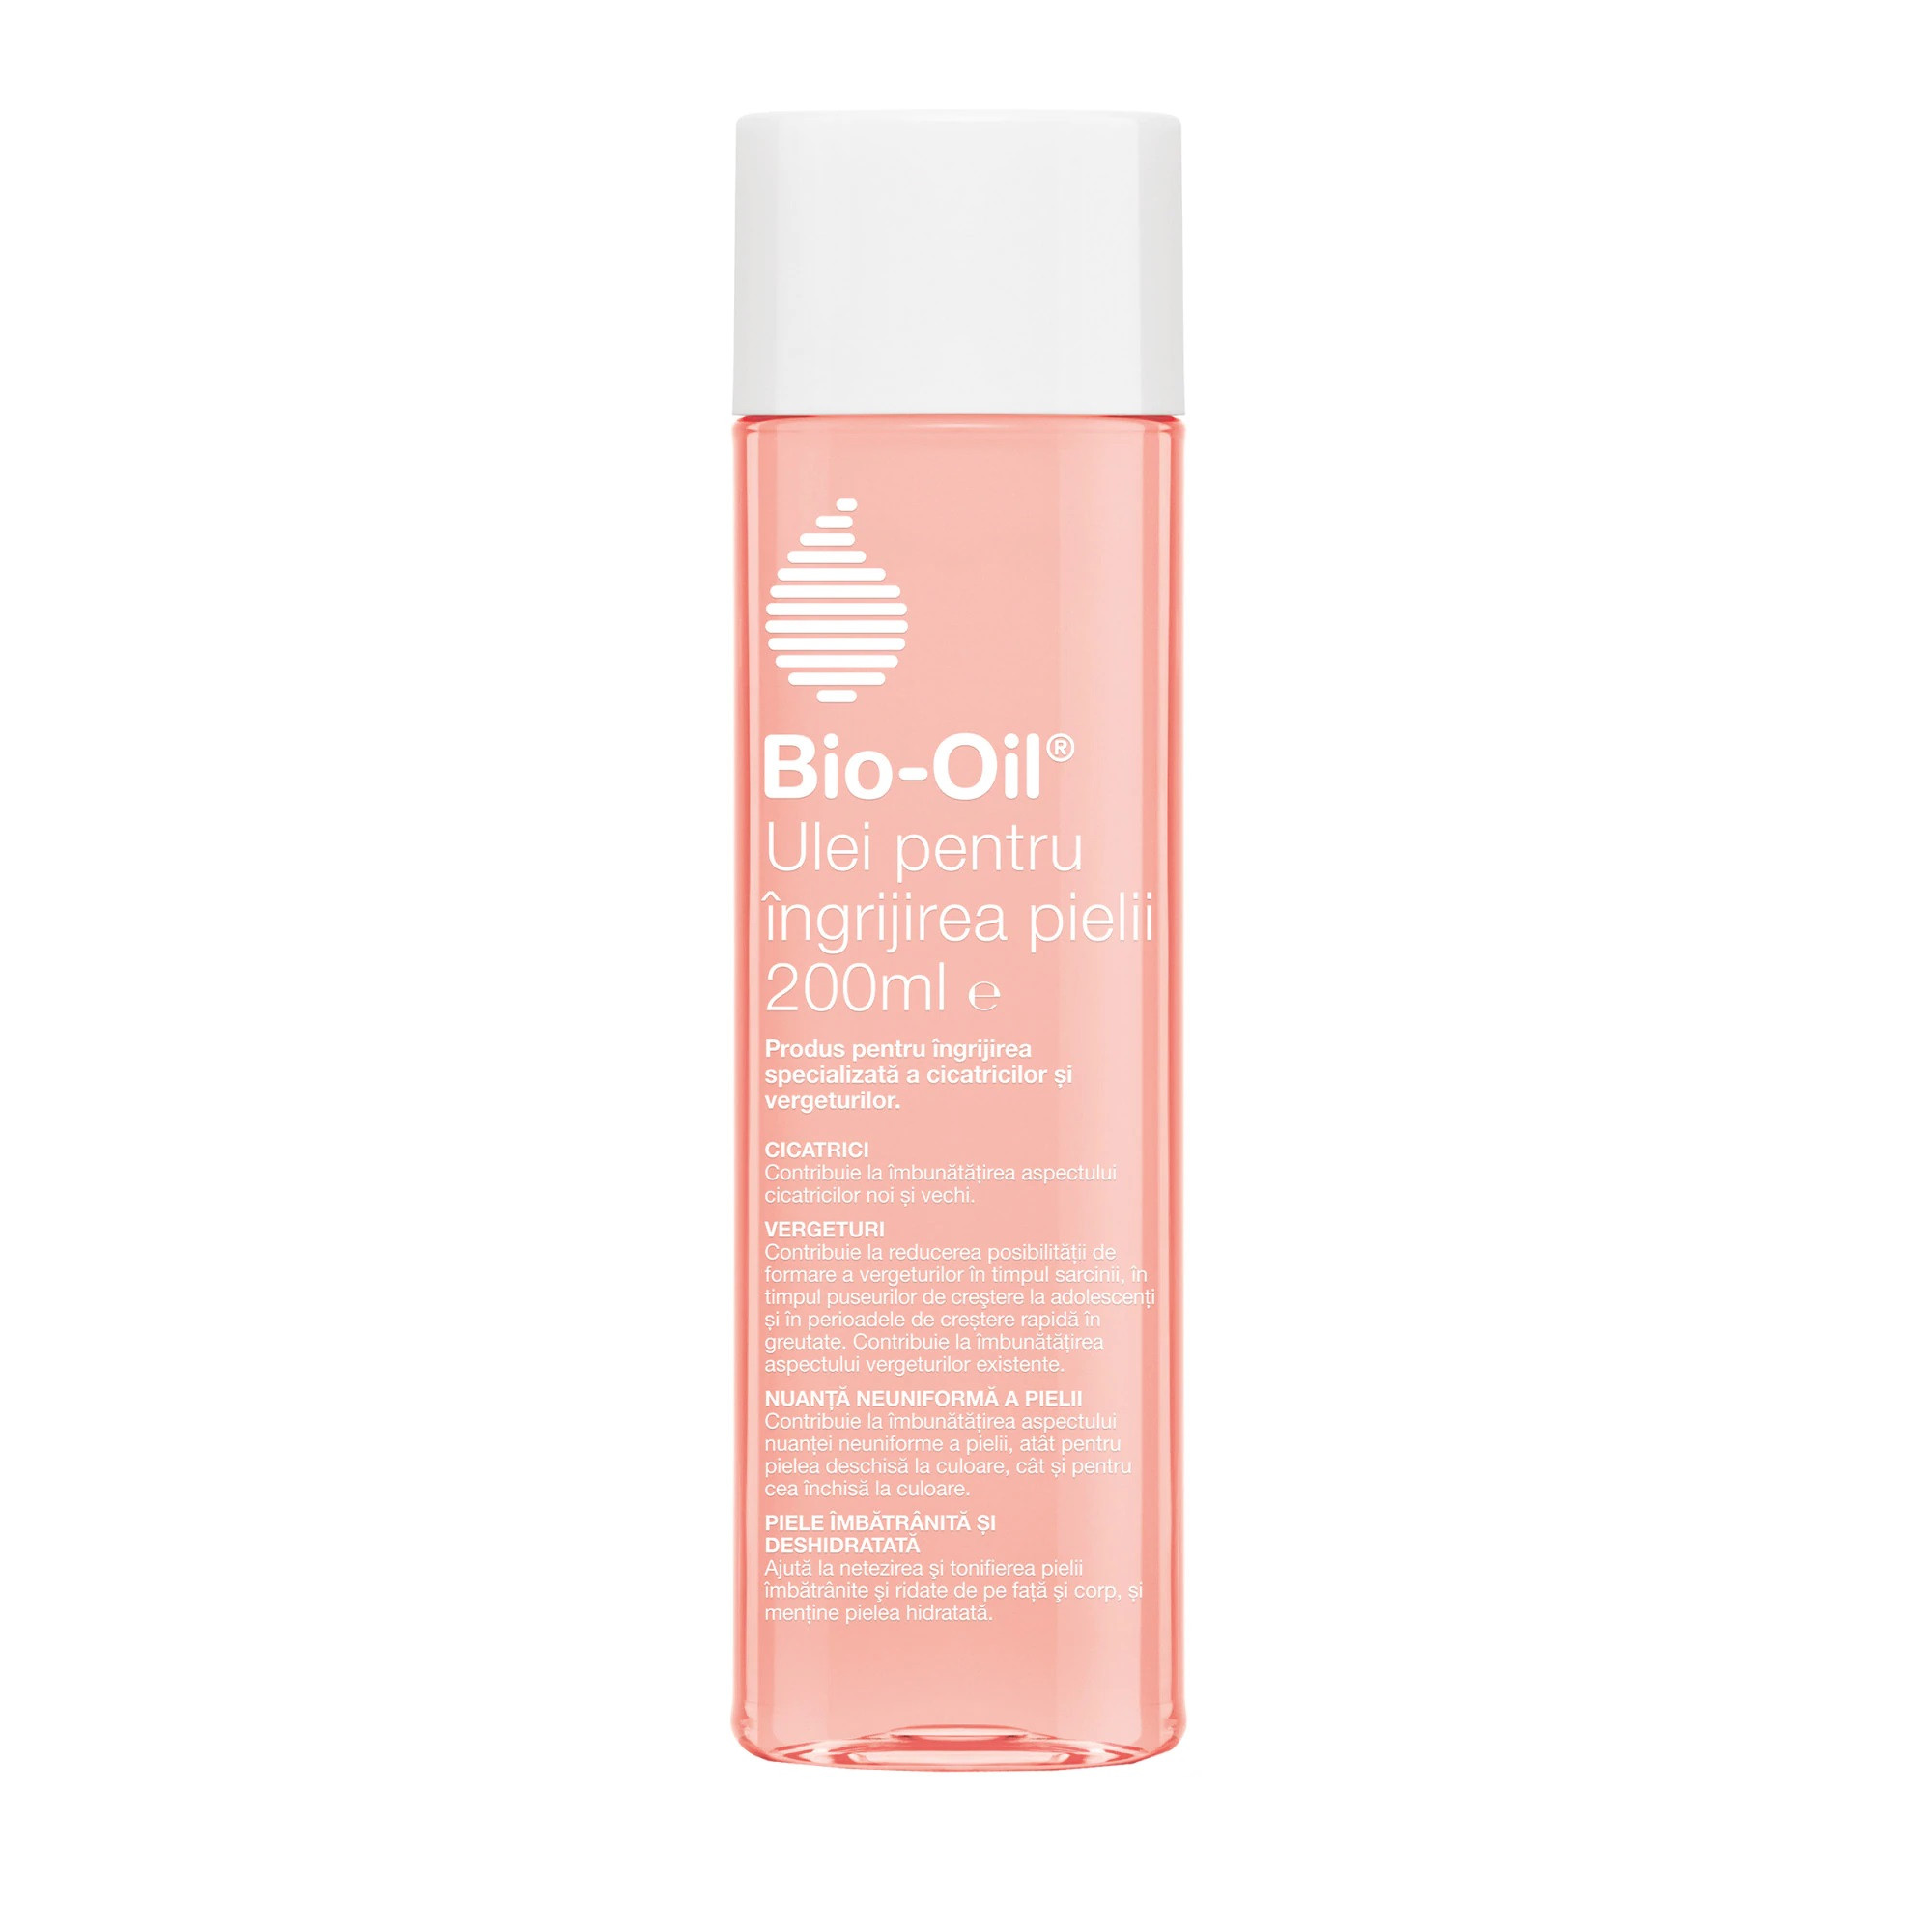 Bio Oil ulei pentru piele elastica fara vergeturi, 200ml (fara